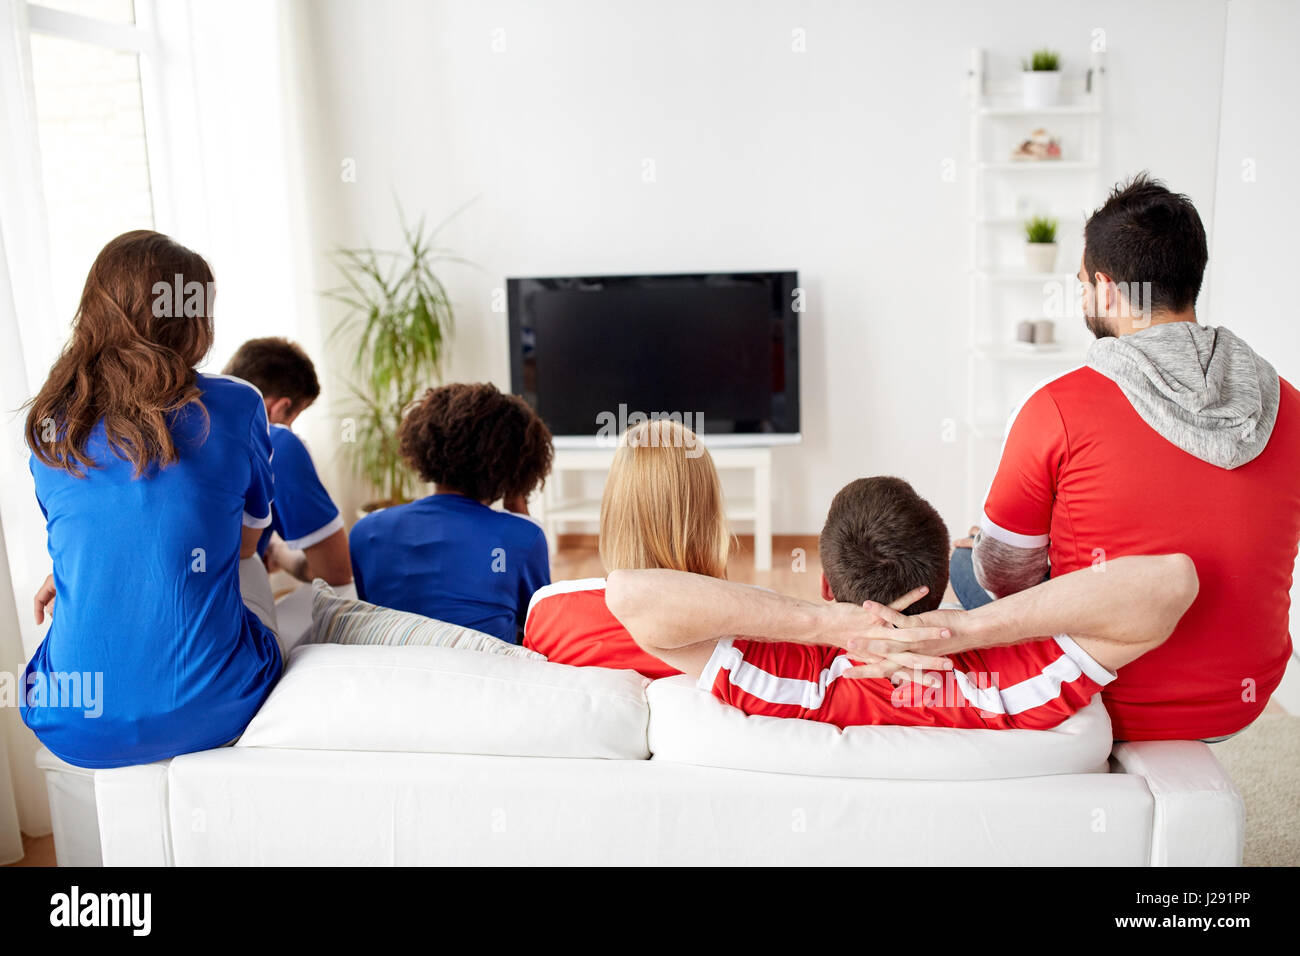 Les amis ou les fans de football, regarder la télévision à la maison Banque D'Images